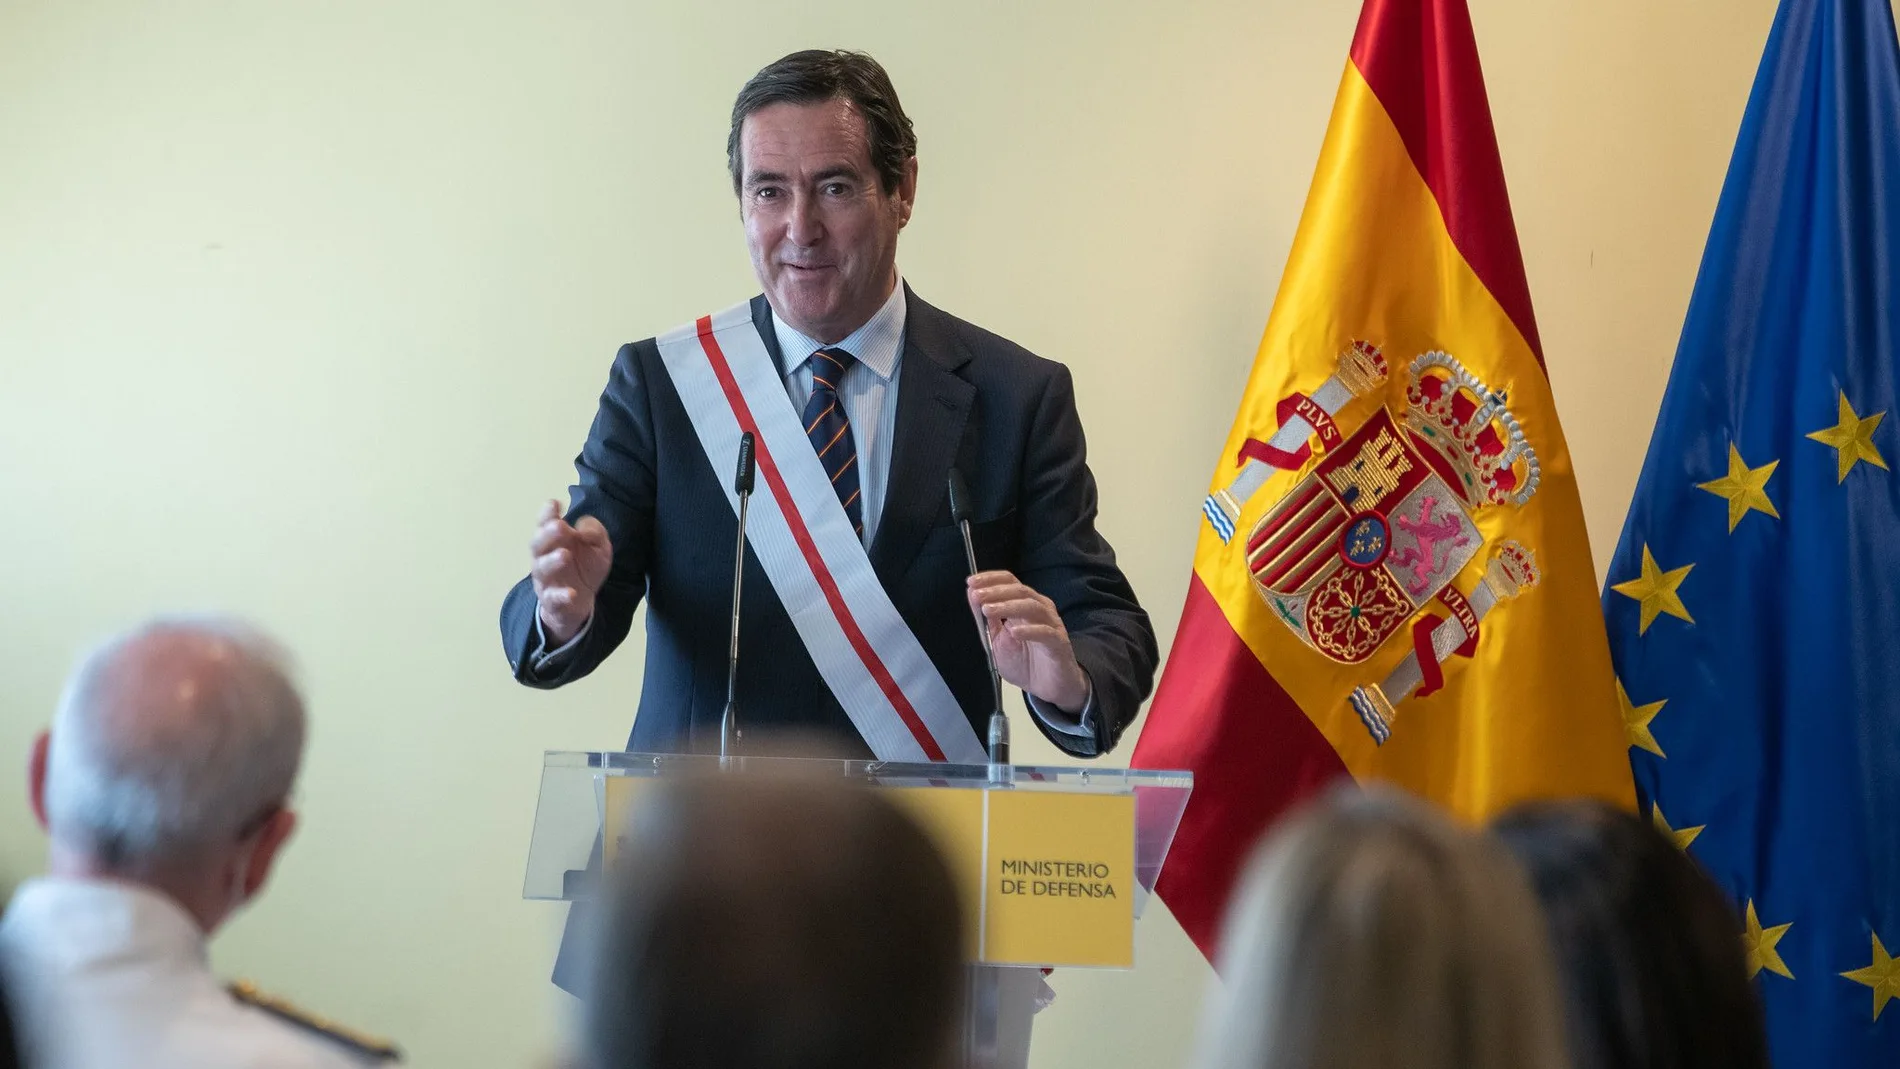 El presidente de la CEOE, Antonio Garamendi, fue condecorado el pasado junio con la Gran Cruz del Mérito Militar con distintivo blanco.